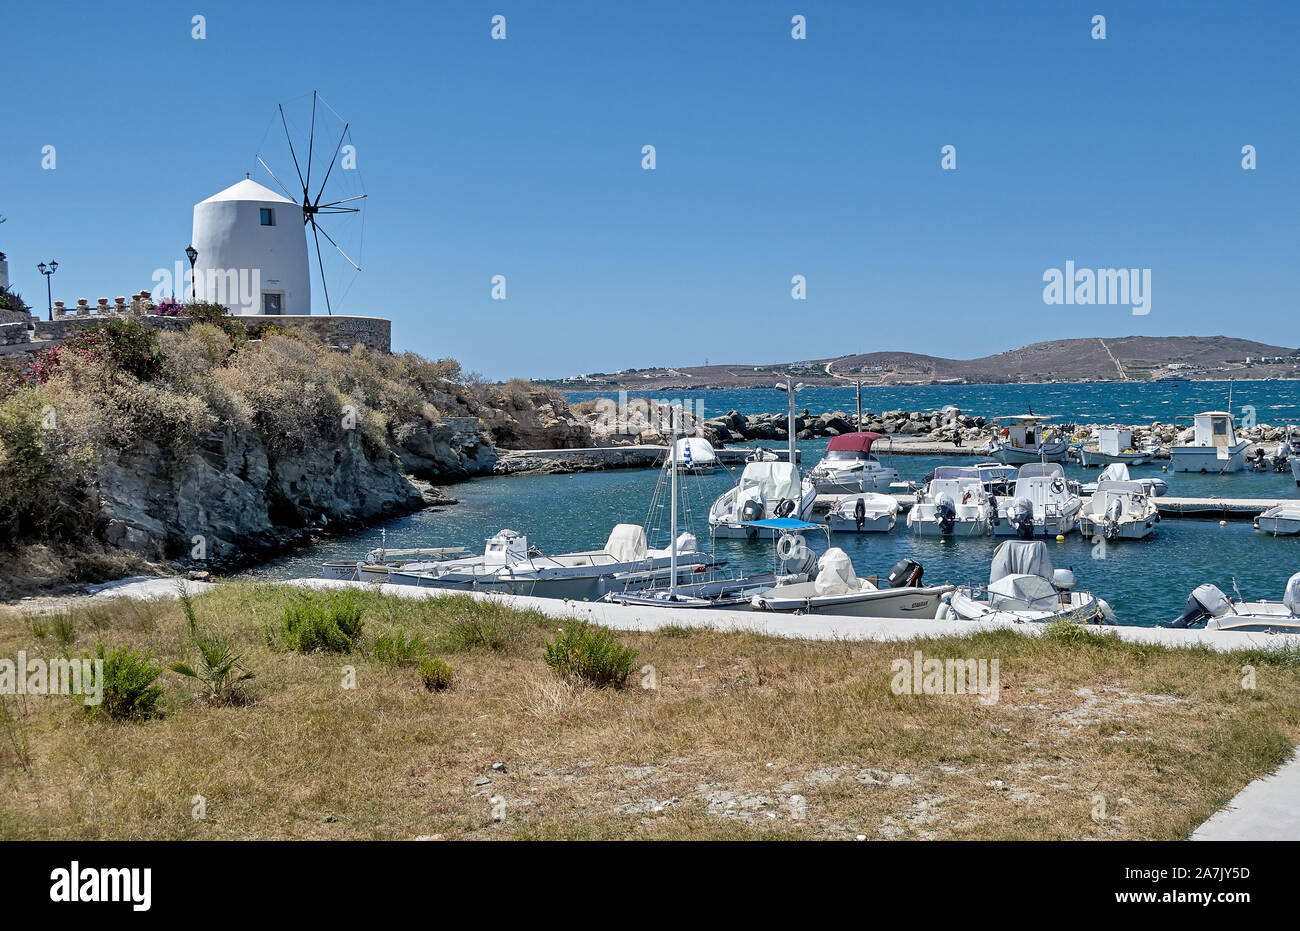 Paikia, Insel Paros, Griechenland - 30. Juni 2019: Blick auf den Yachthafen und seine Mühle in Parikia, Paros, Griechenland Stockfoto